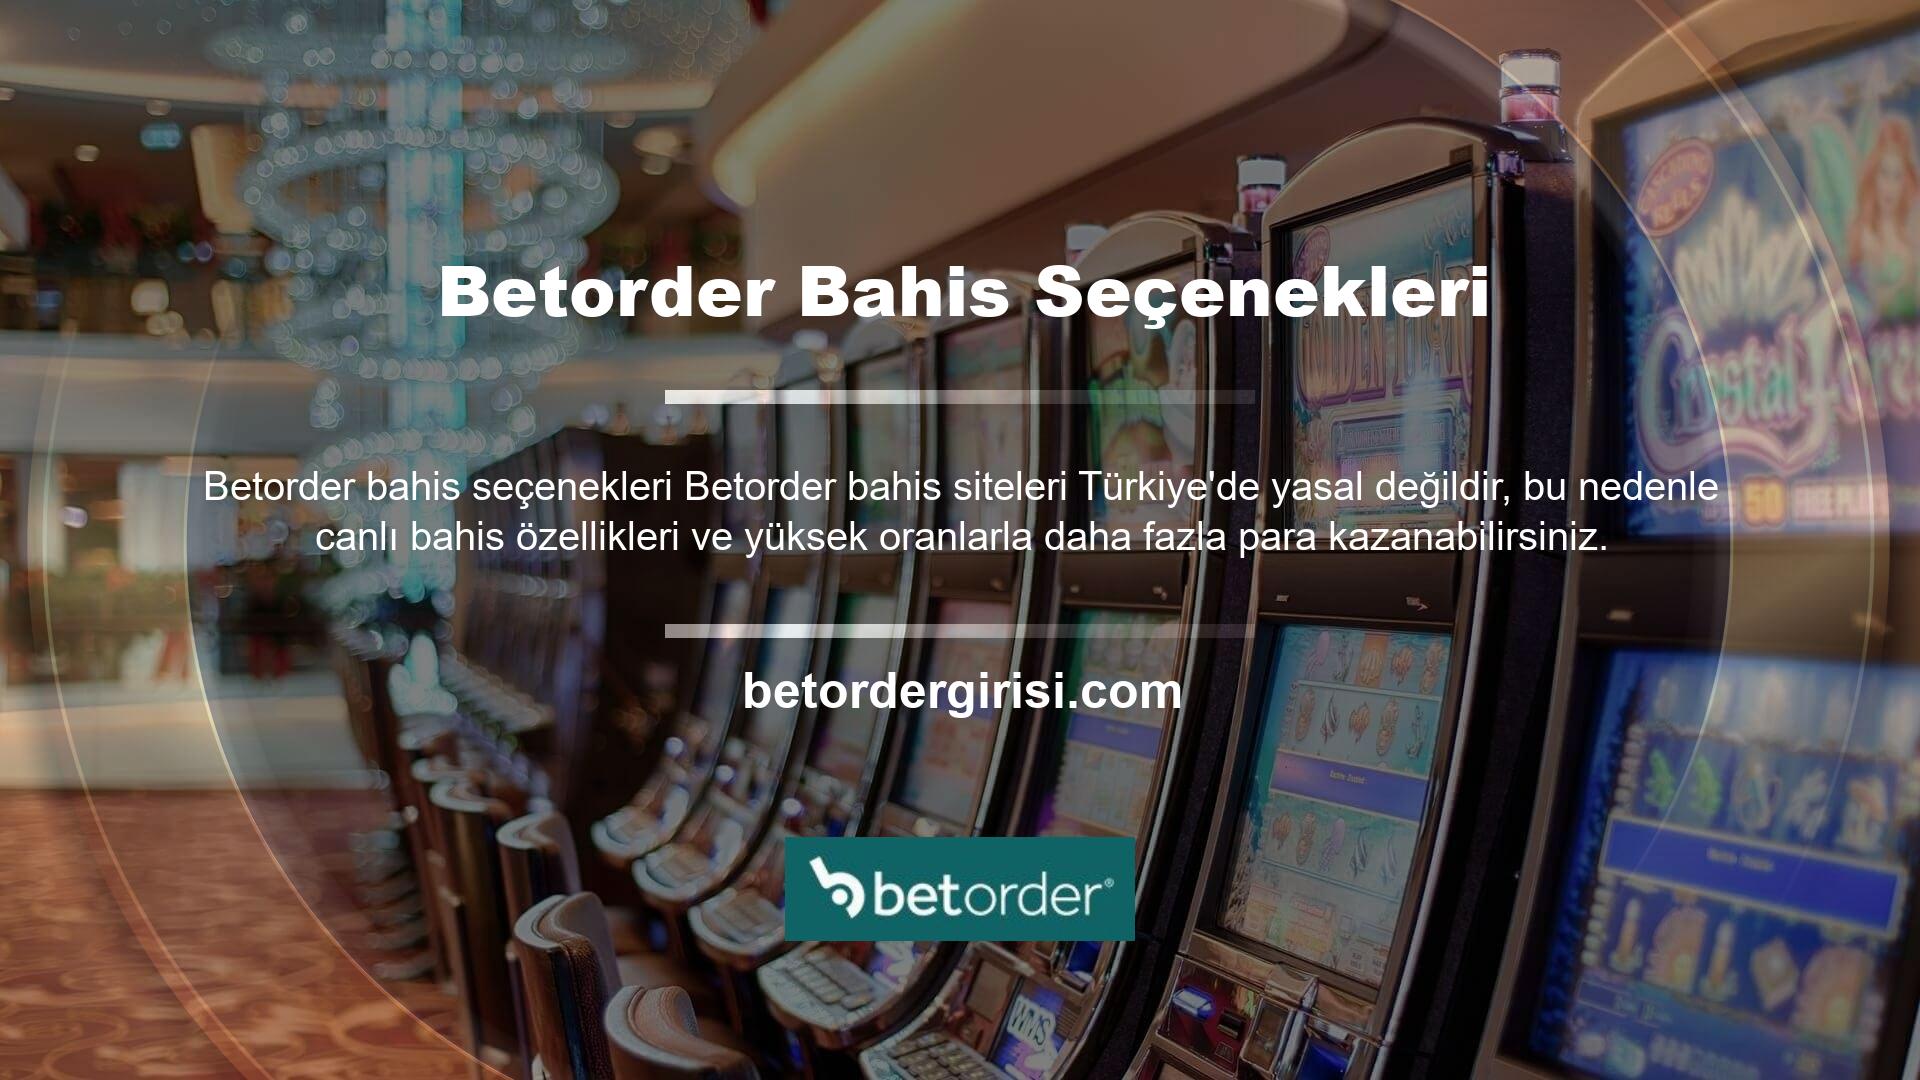 Betorder dünyanın ve Türkiye'nin en ünlü bahis sitelerinden biridir ve dikkat çekmeye devam etmektedir